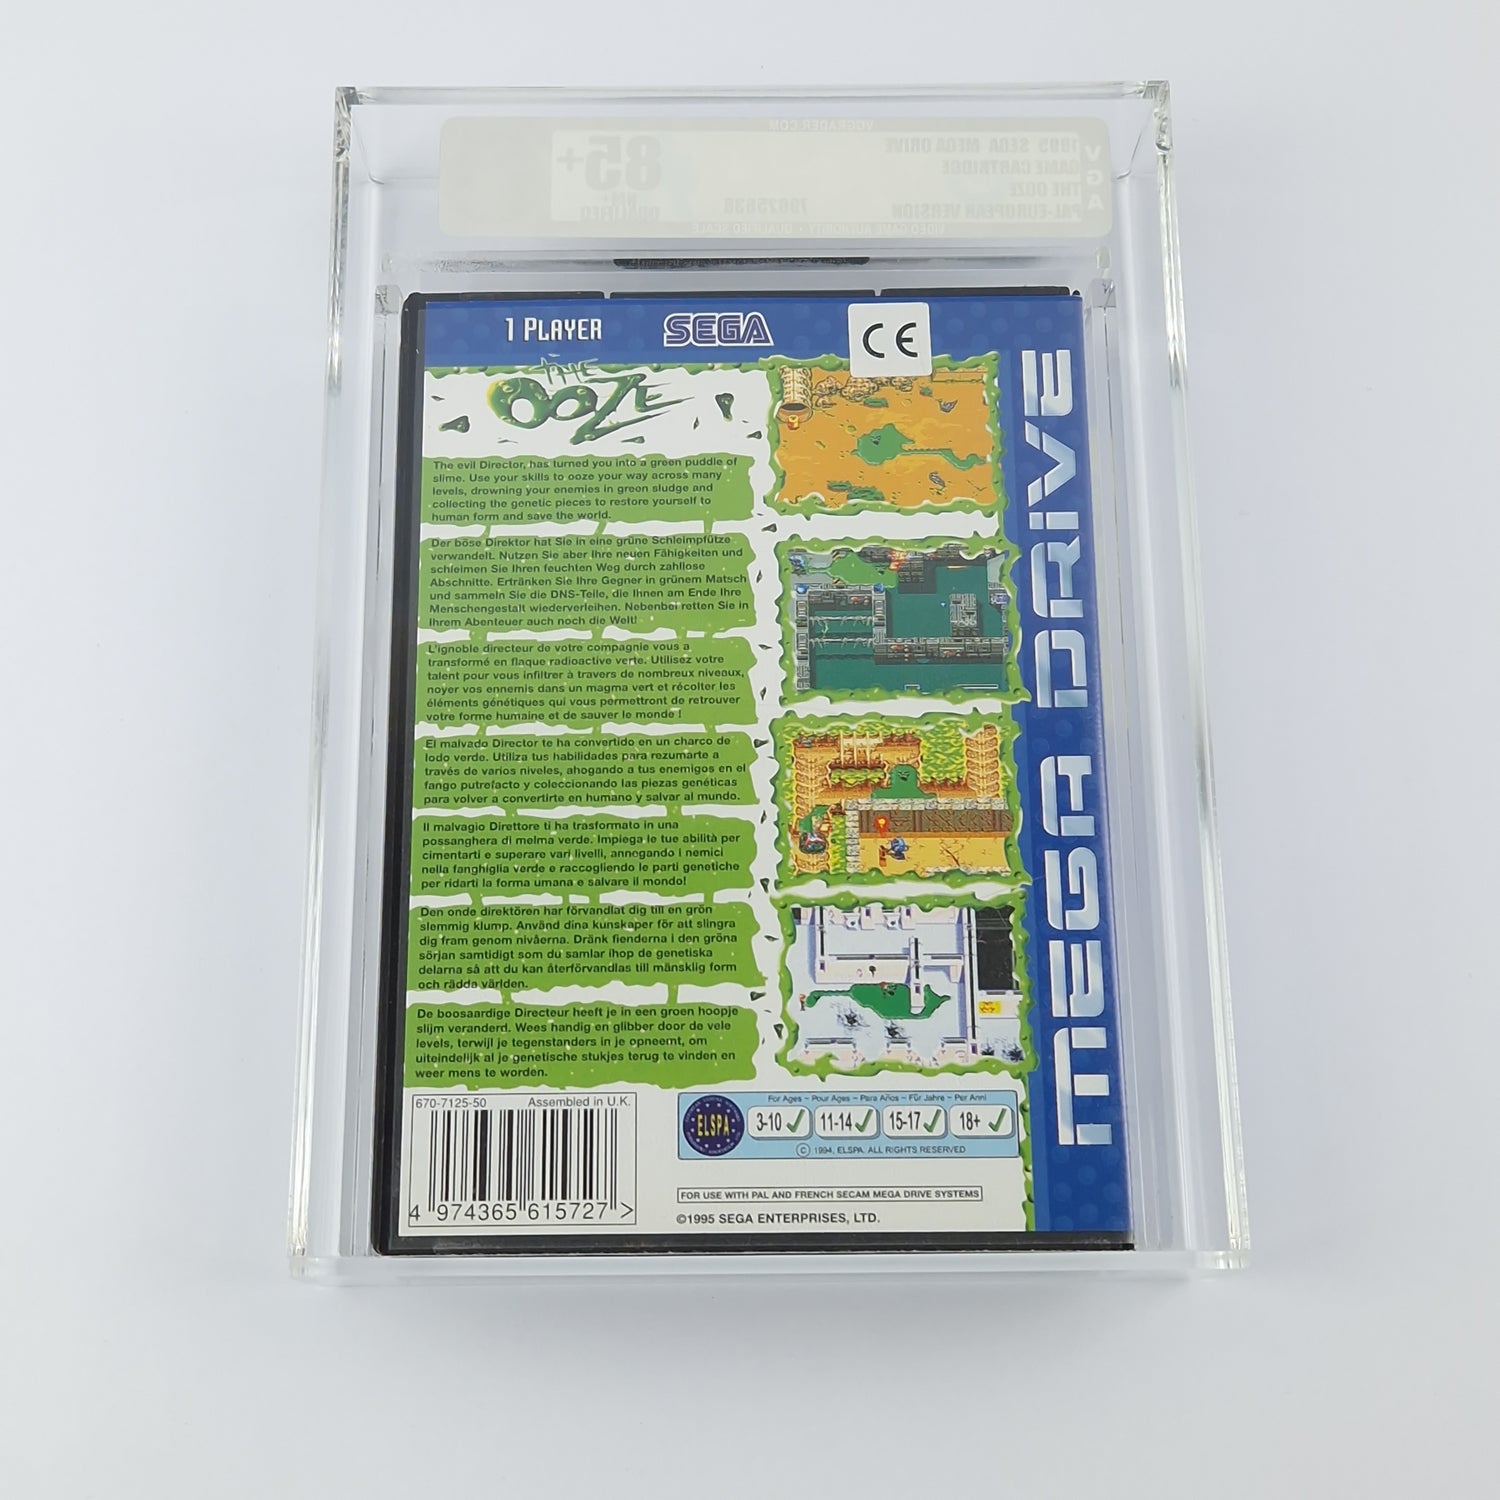 Sega Mega Drive Game: The OOZE - OVP NEW NEW - VGA 85+ NM+ Qualified